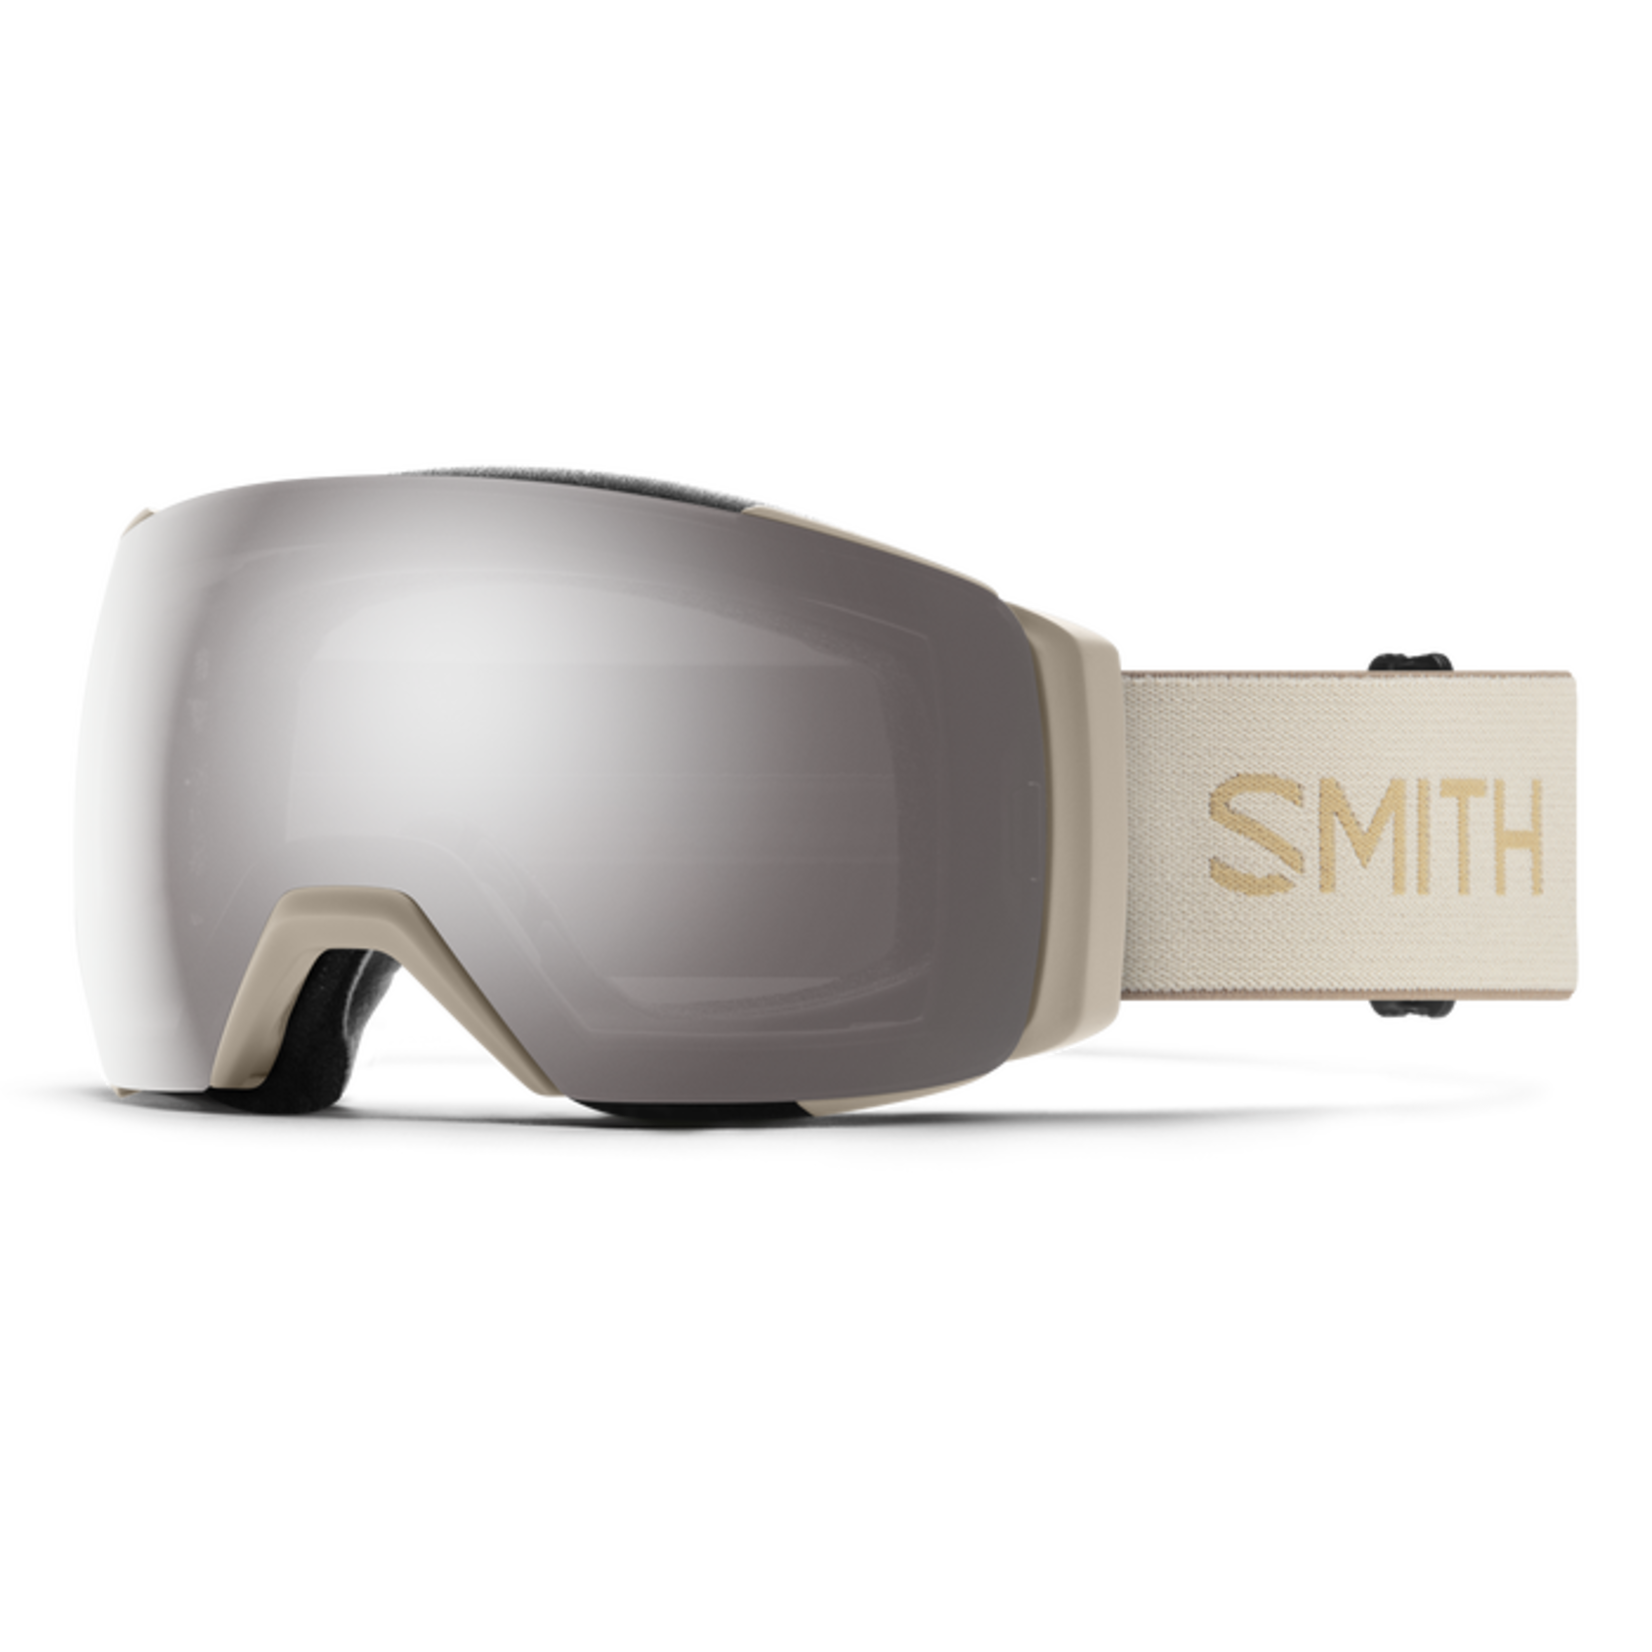 SMITH SMITH I/O MAG XL